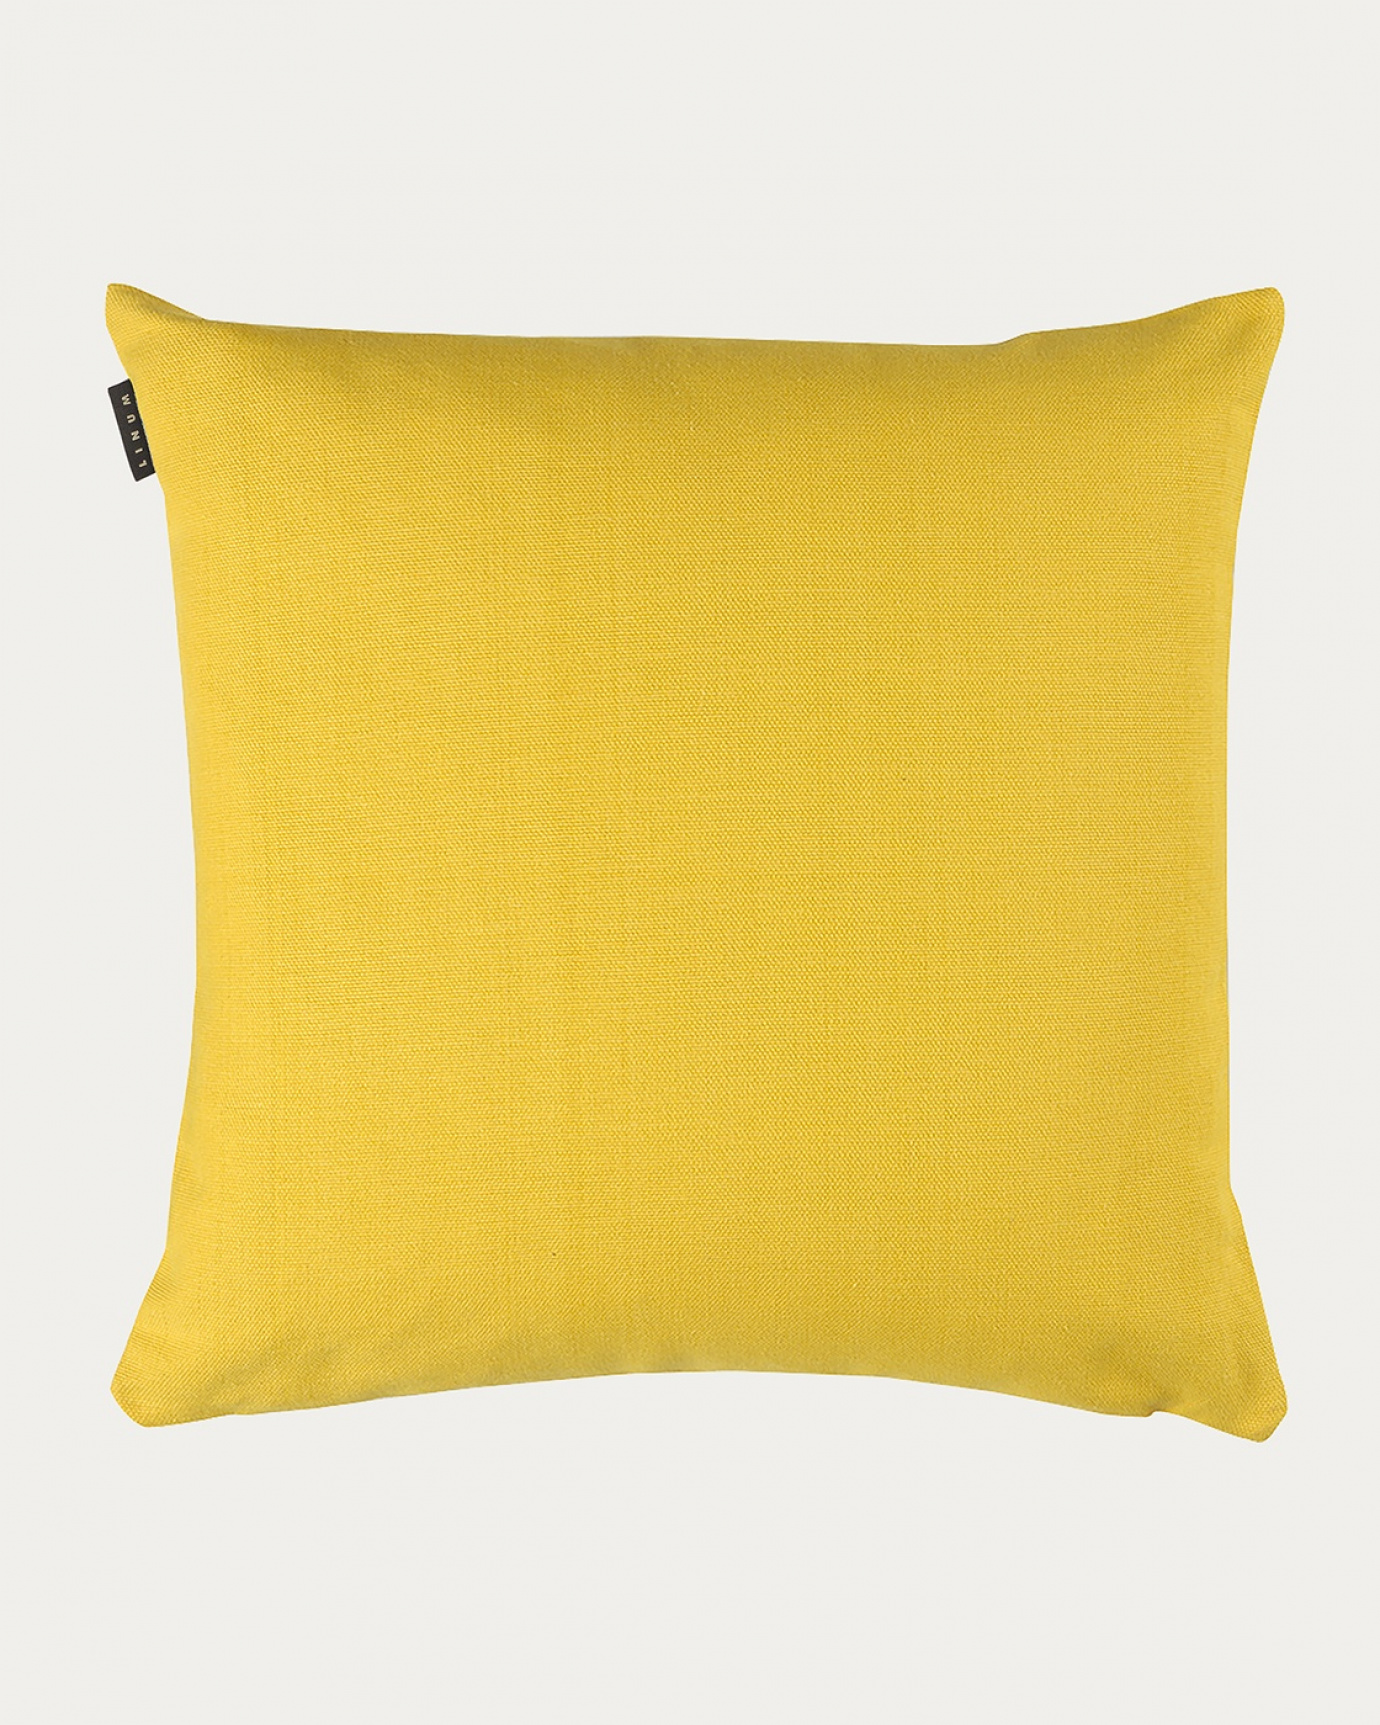 Produktbild jaune mandarine PEPPER Kissenhülle aus weicher Baumwolle von LINUM DESIGN. Einfach zu waschen und langlebig für Generationen. Größe 60x60 cm.